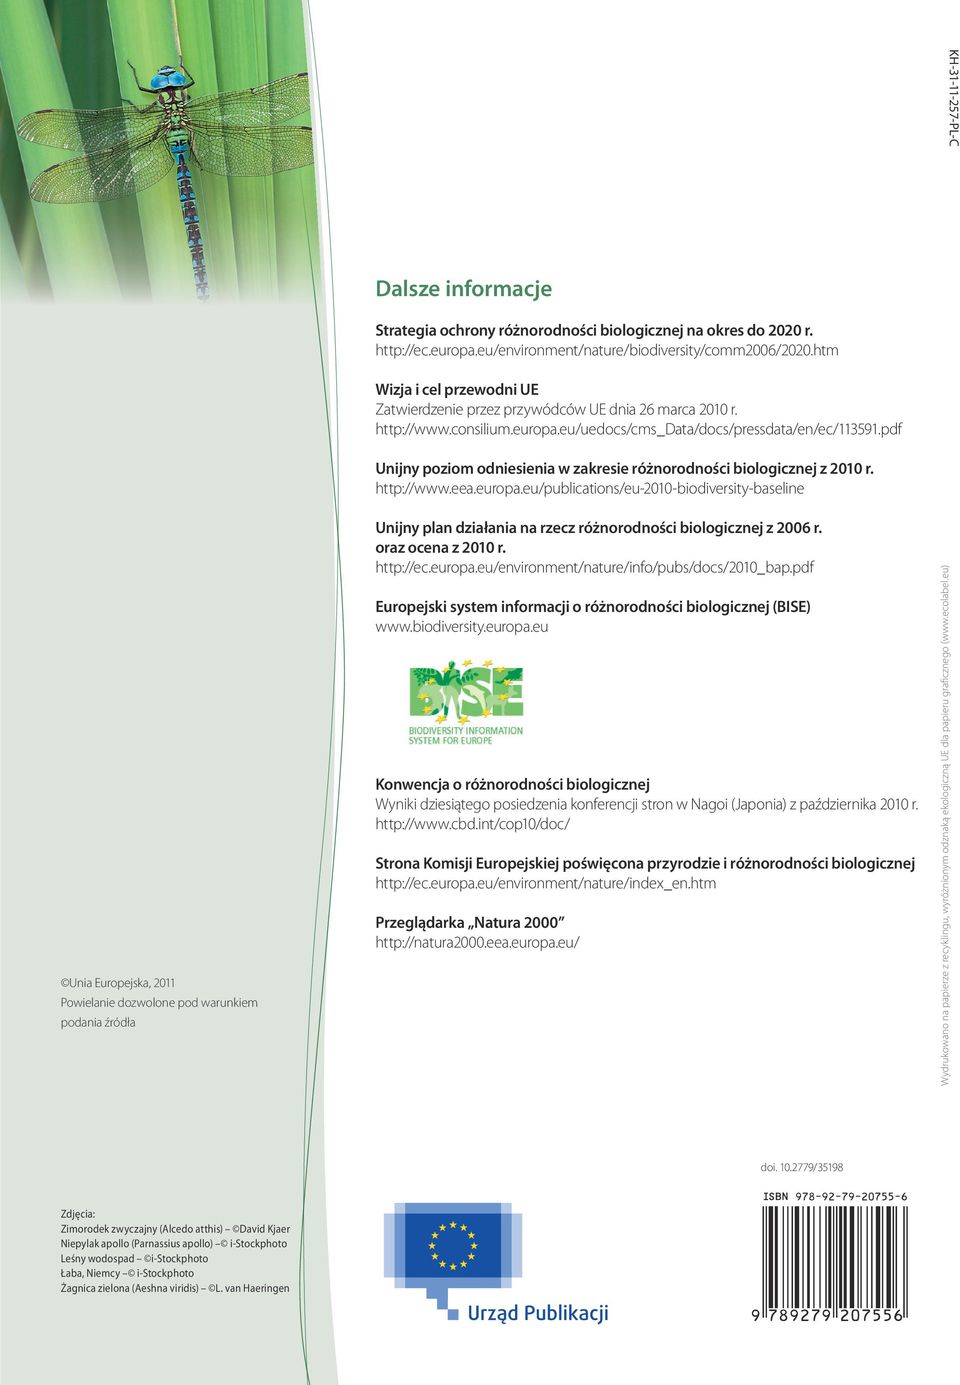 pdf Unijny poziom odniesienia w zakresie różnorodności biologicznej z 2010 r. http://www.eea.europa.